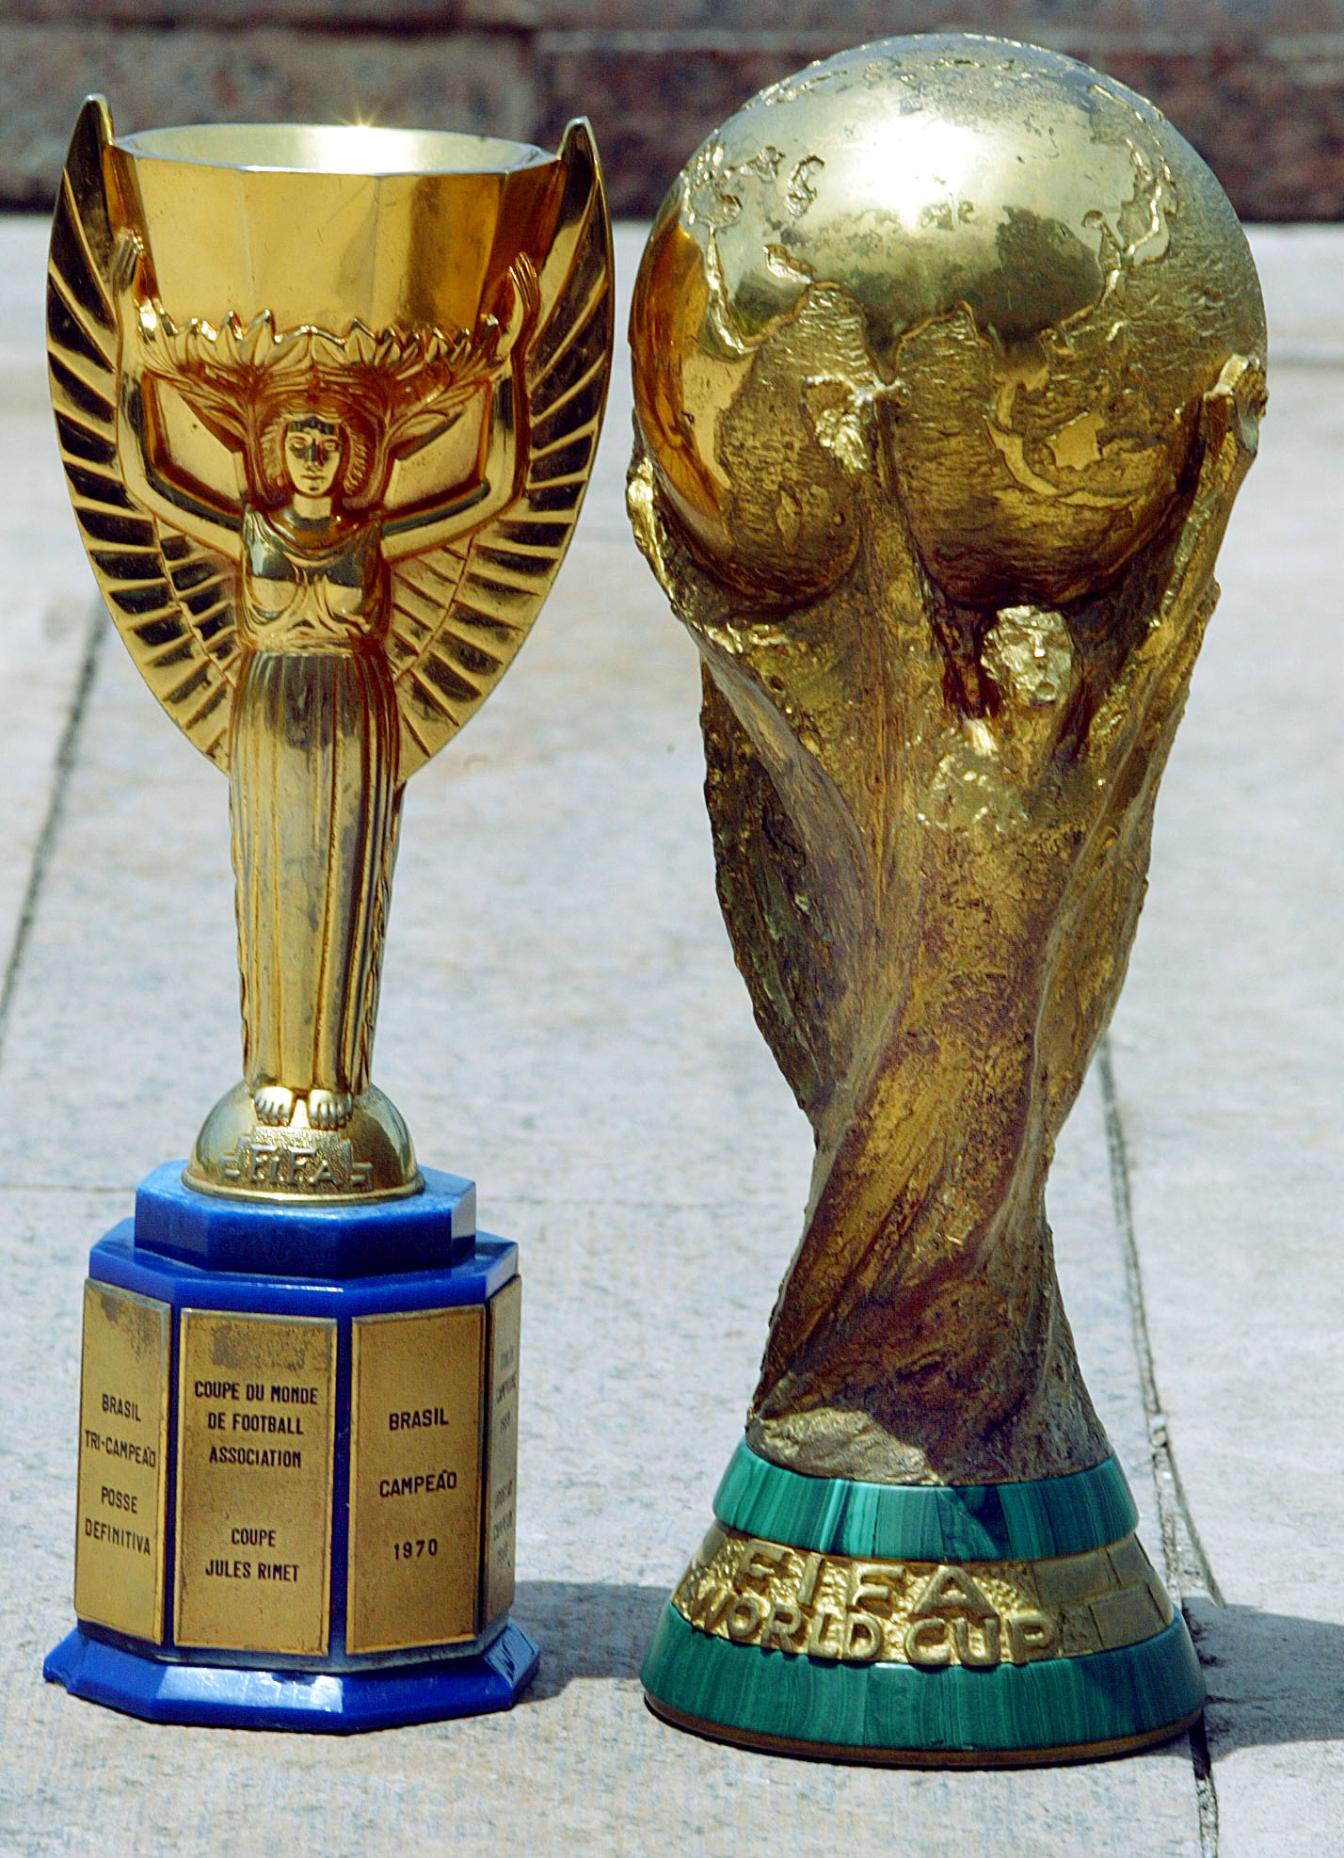 Der "Coupe Jules Rimet" neben dem neuen FIFA-WM-Pokal